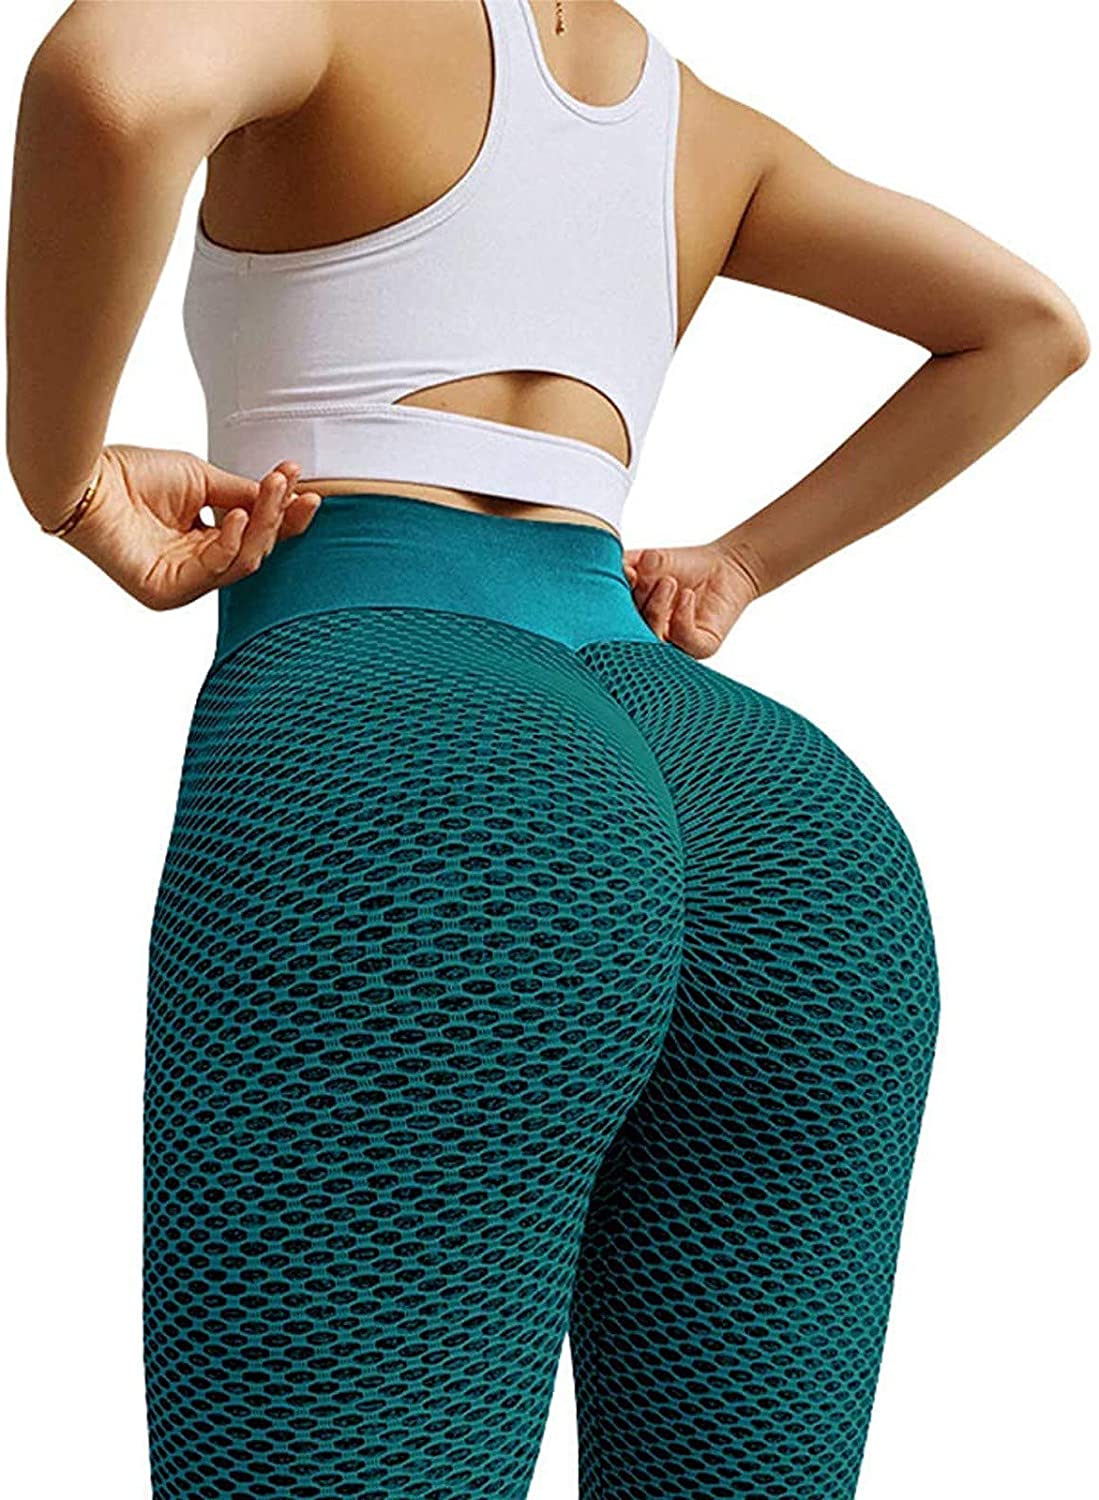 Feinuhan Women's High Waisted Yoga Pants Tummy Control Booty